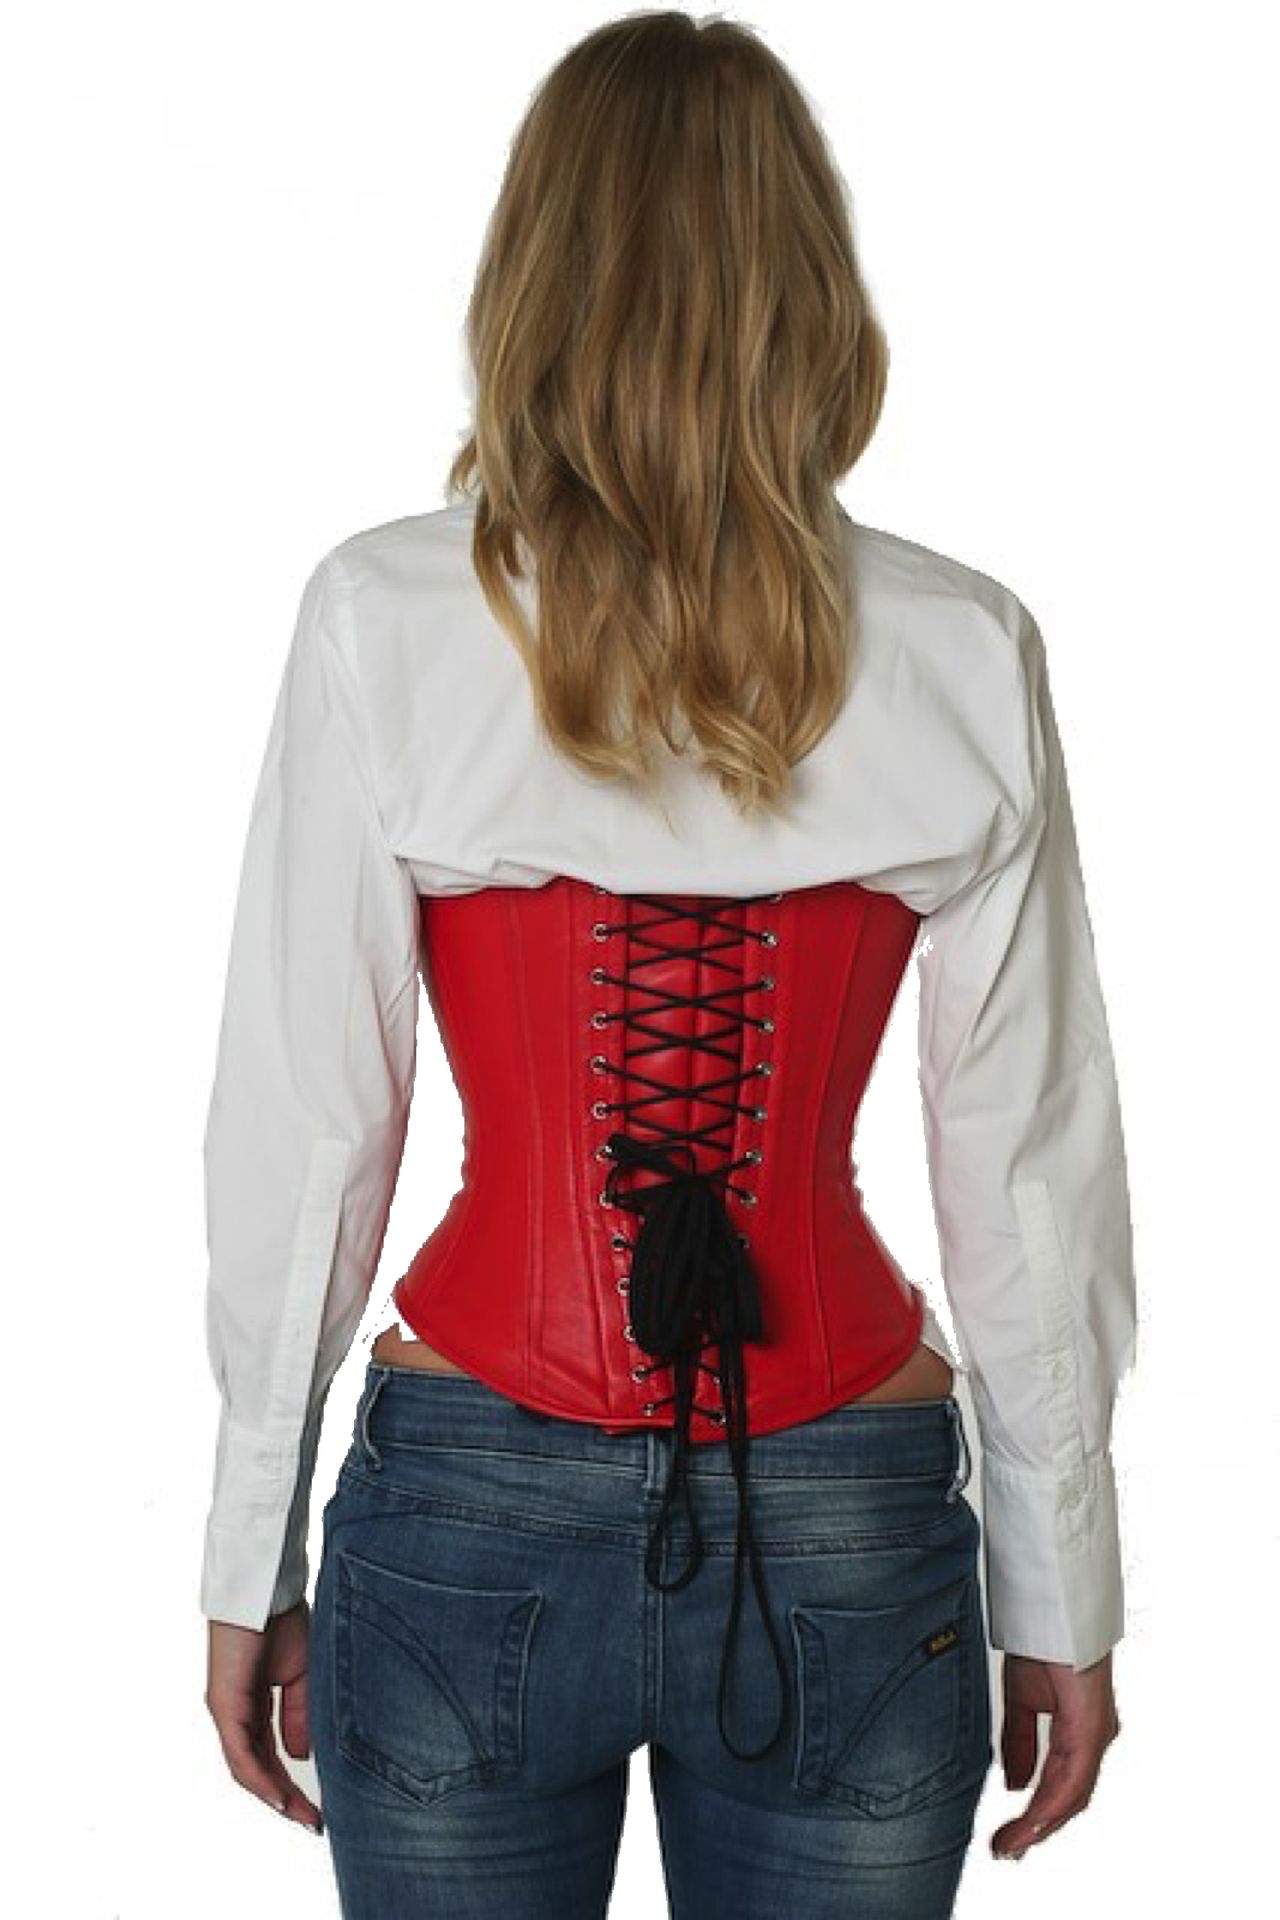 Leren corset rood onderborst Korset lu23